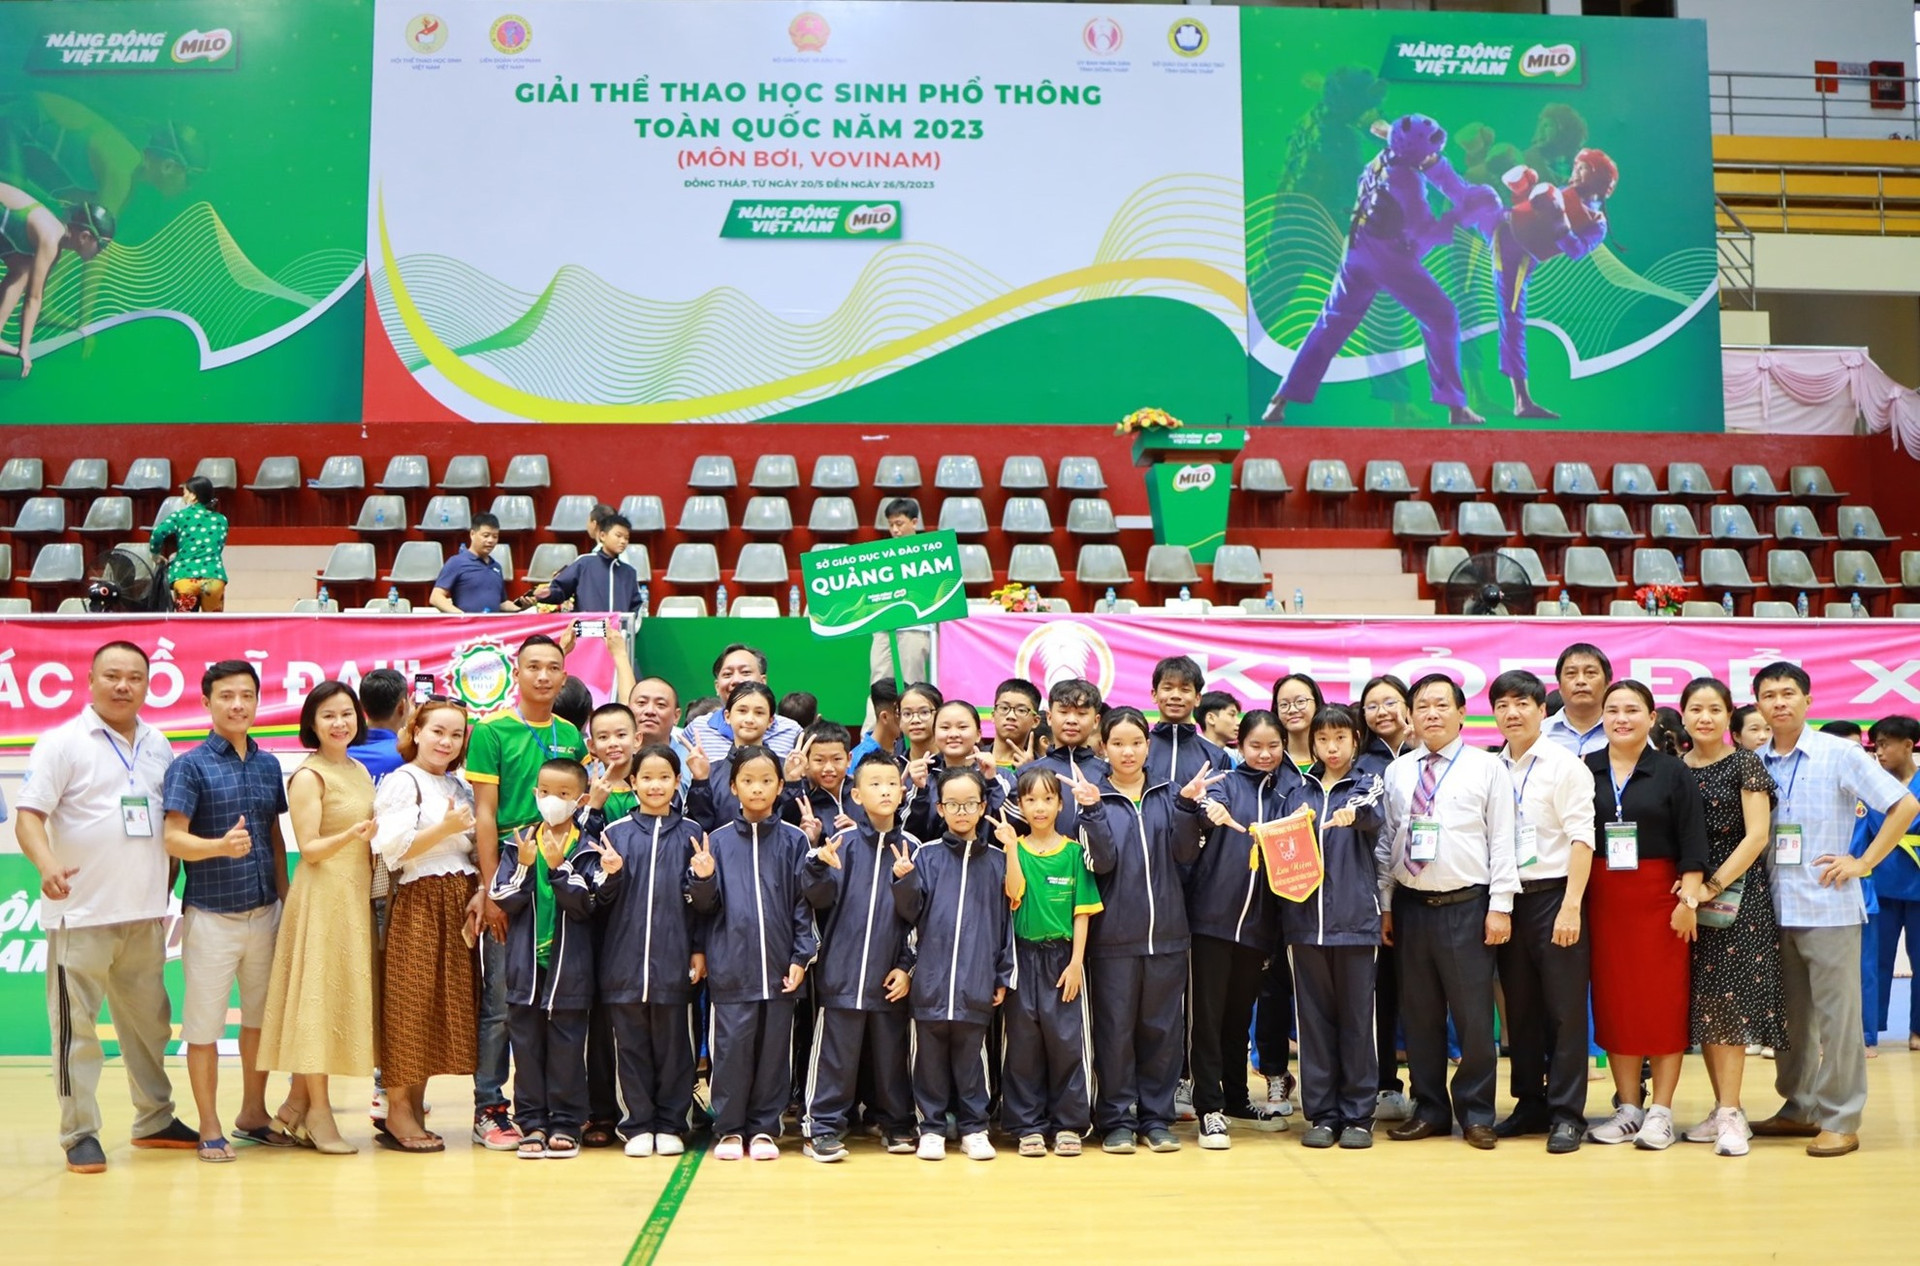 Đoàn VĐV Quảng Nam tham gia giải thể thao học sinh phổ thông toàn quốc năm 2023 tại Đồng Tháp. Ảnh: THẢO GIANG.